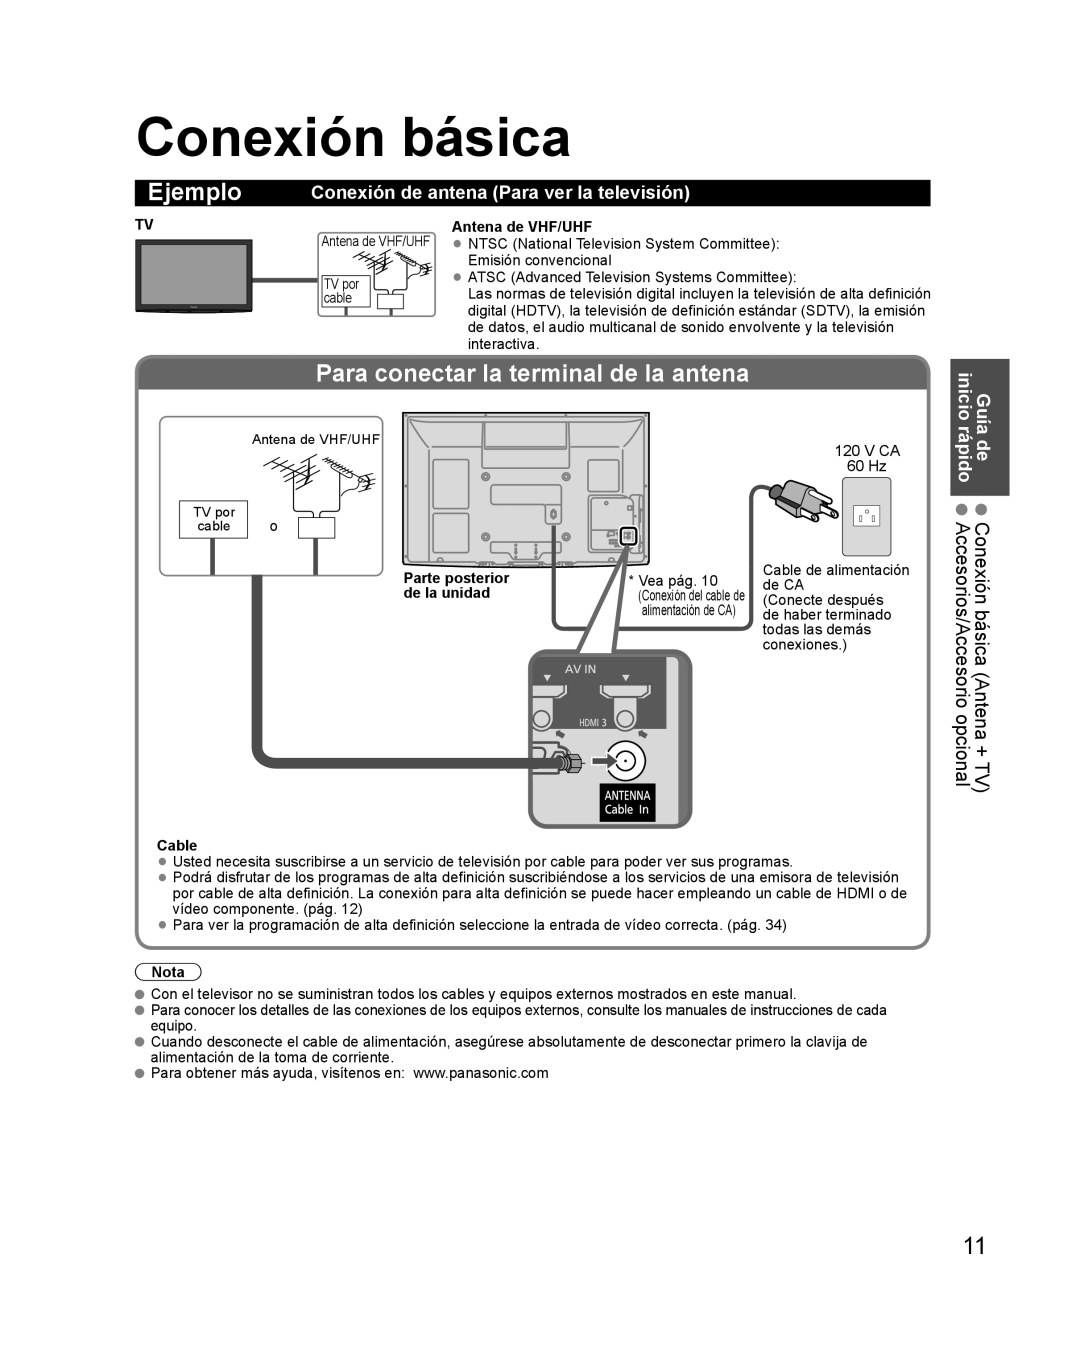 Panasonic TQB2AA0579 Conexión básica, Ejemplo, Para conectar la terminal de la antena, Guía inicio, Antena de VHF/UHF 